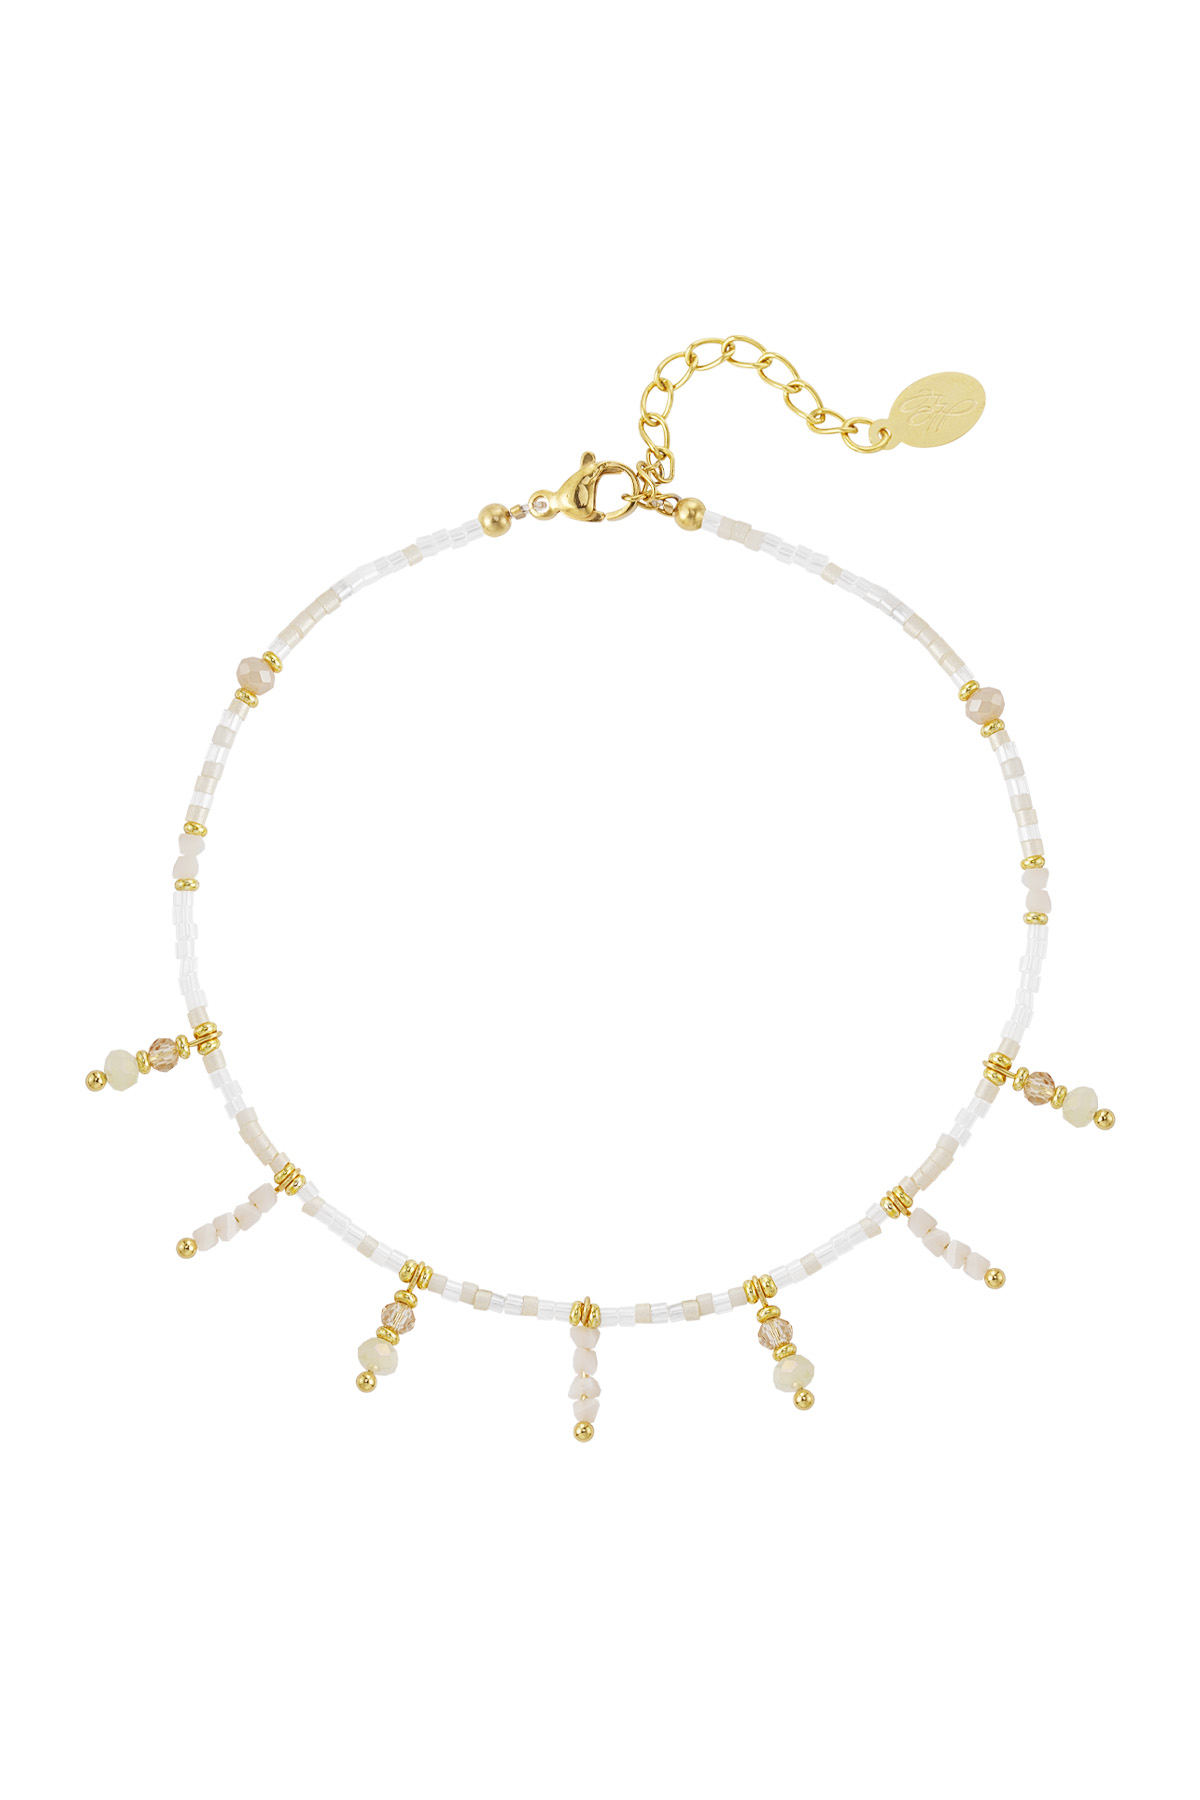 Beaded bracelet with beaded pendants - white / gold